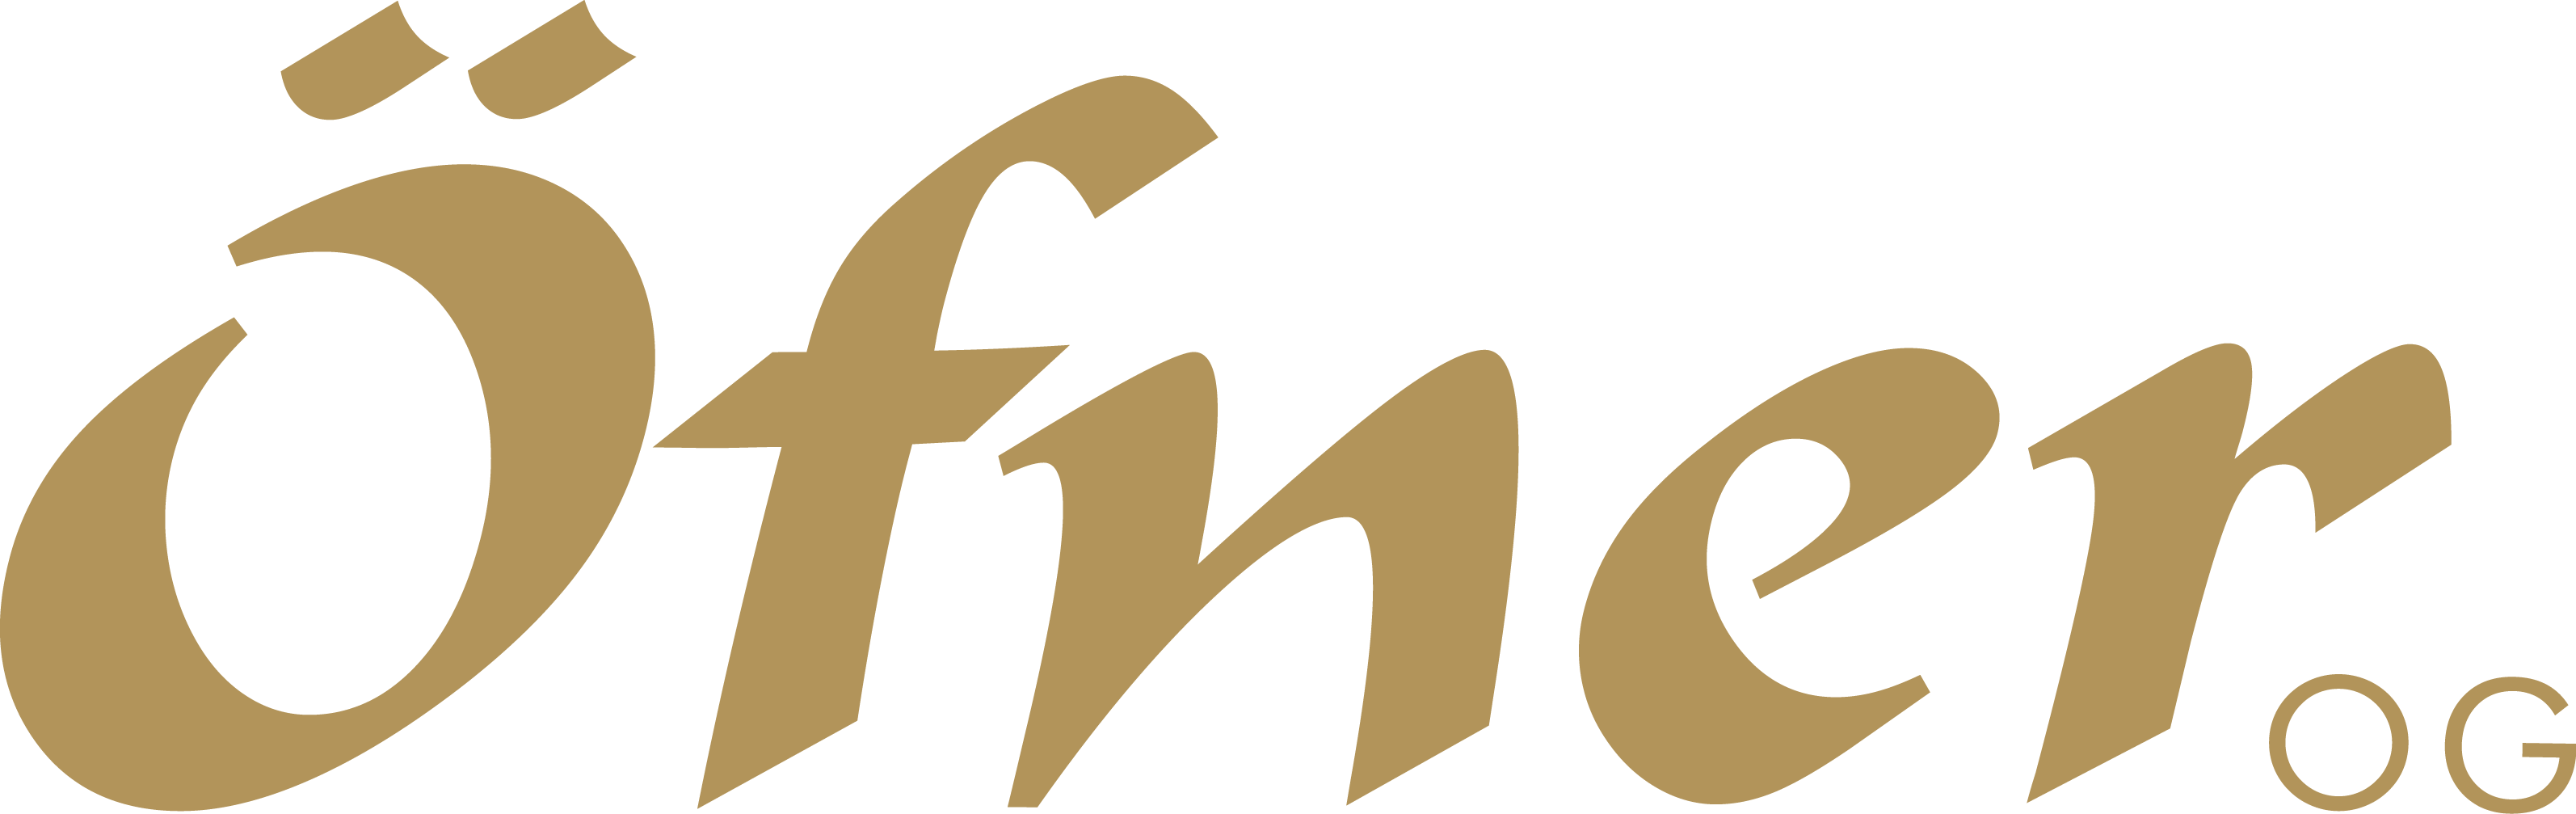 Öfner OG Logo - gold